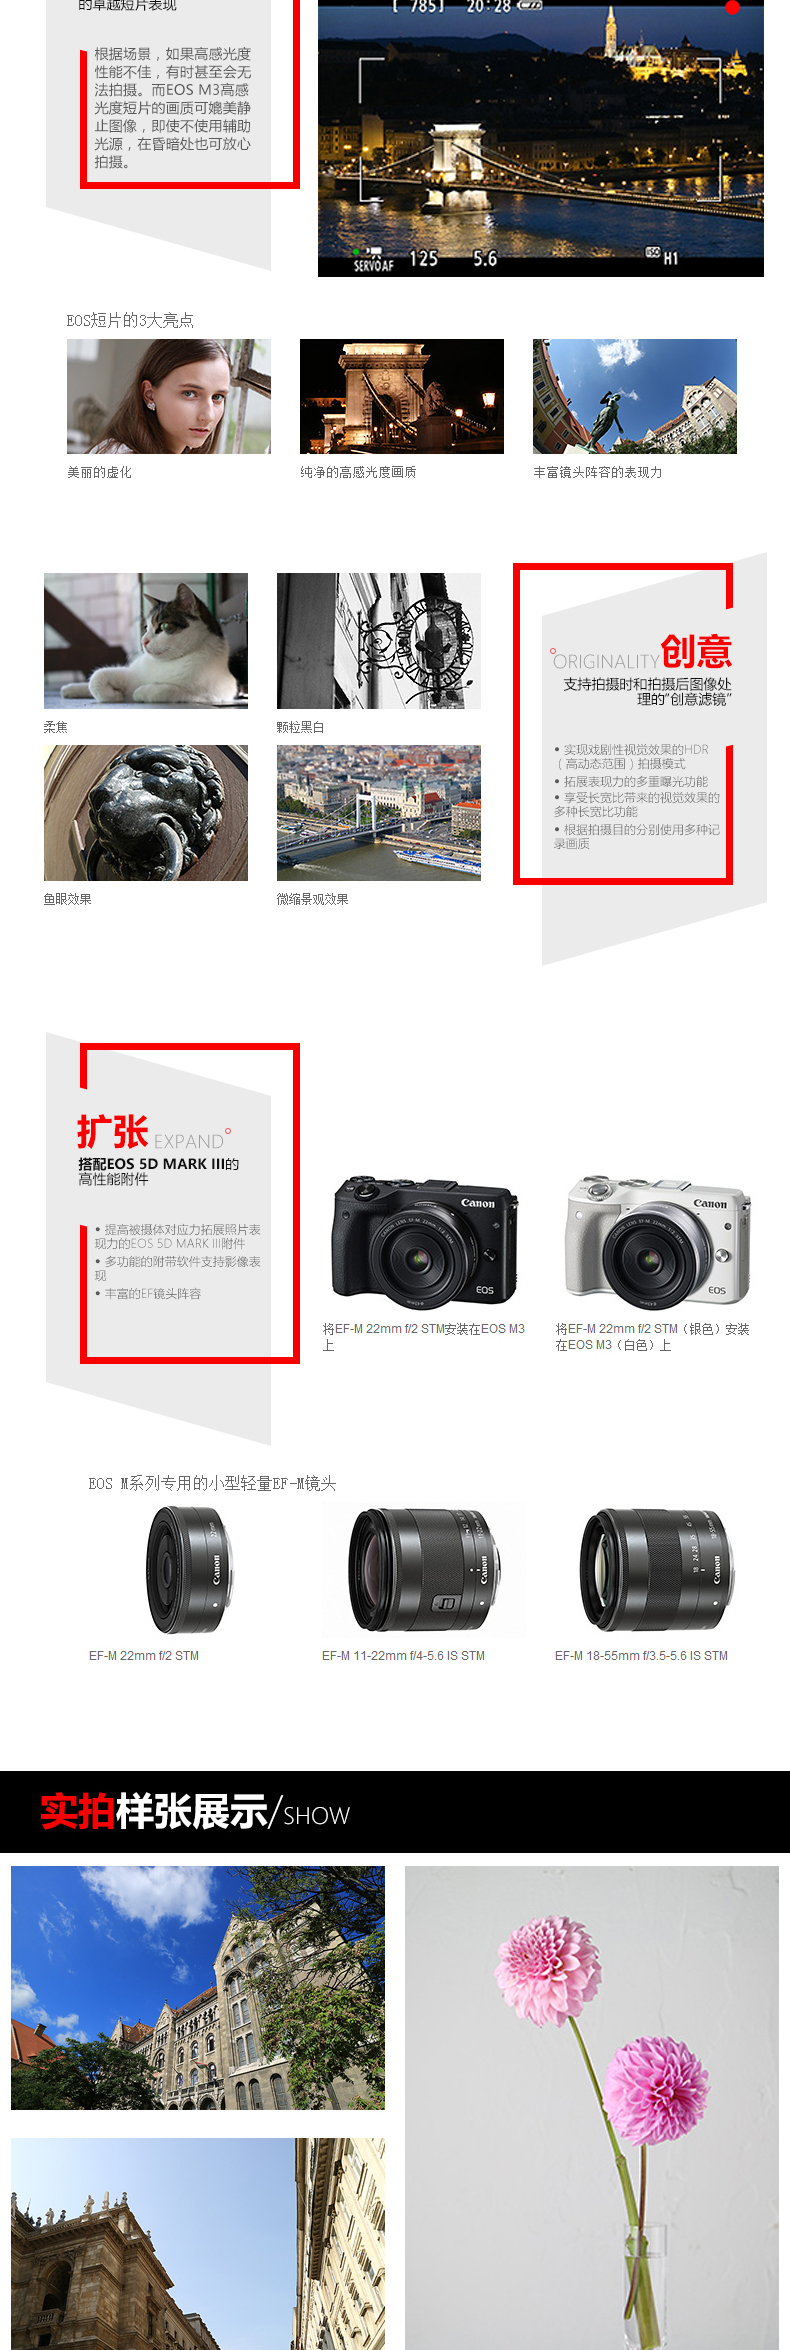 佳能(Canon) EOS M3 微单套机 (EF-M 15-45mm f/3.5-6.3 IS STM镜头) 白色